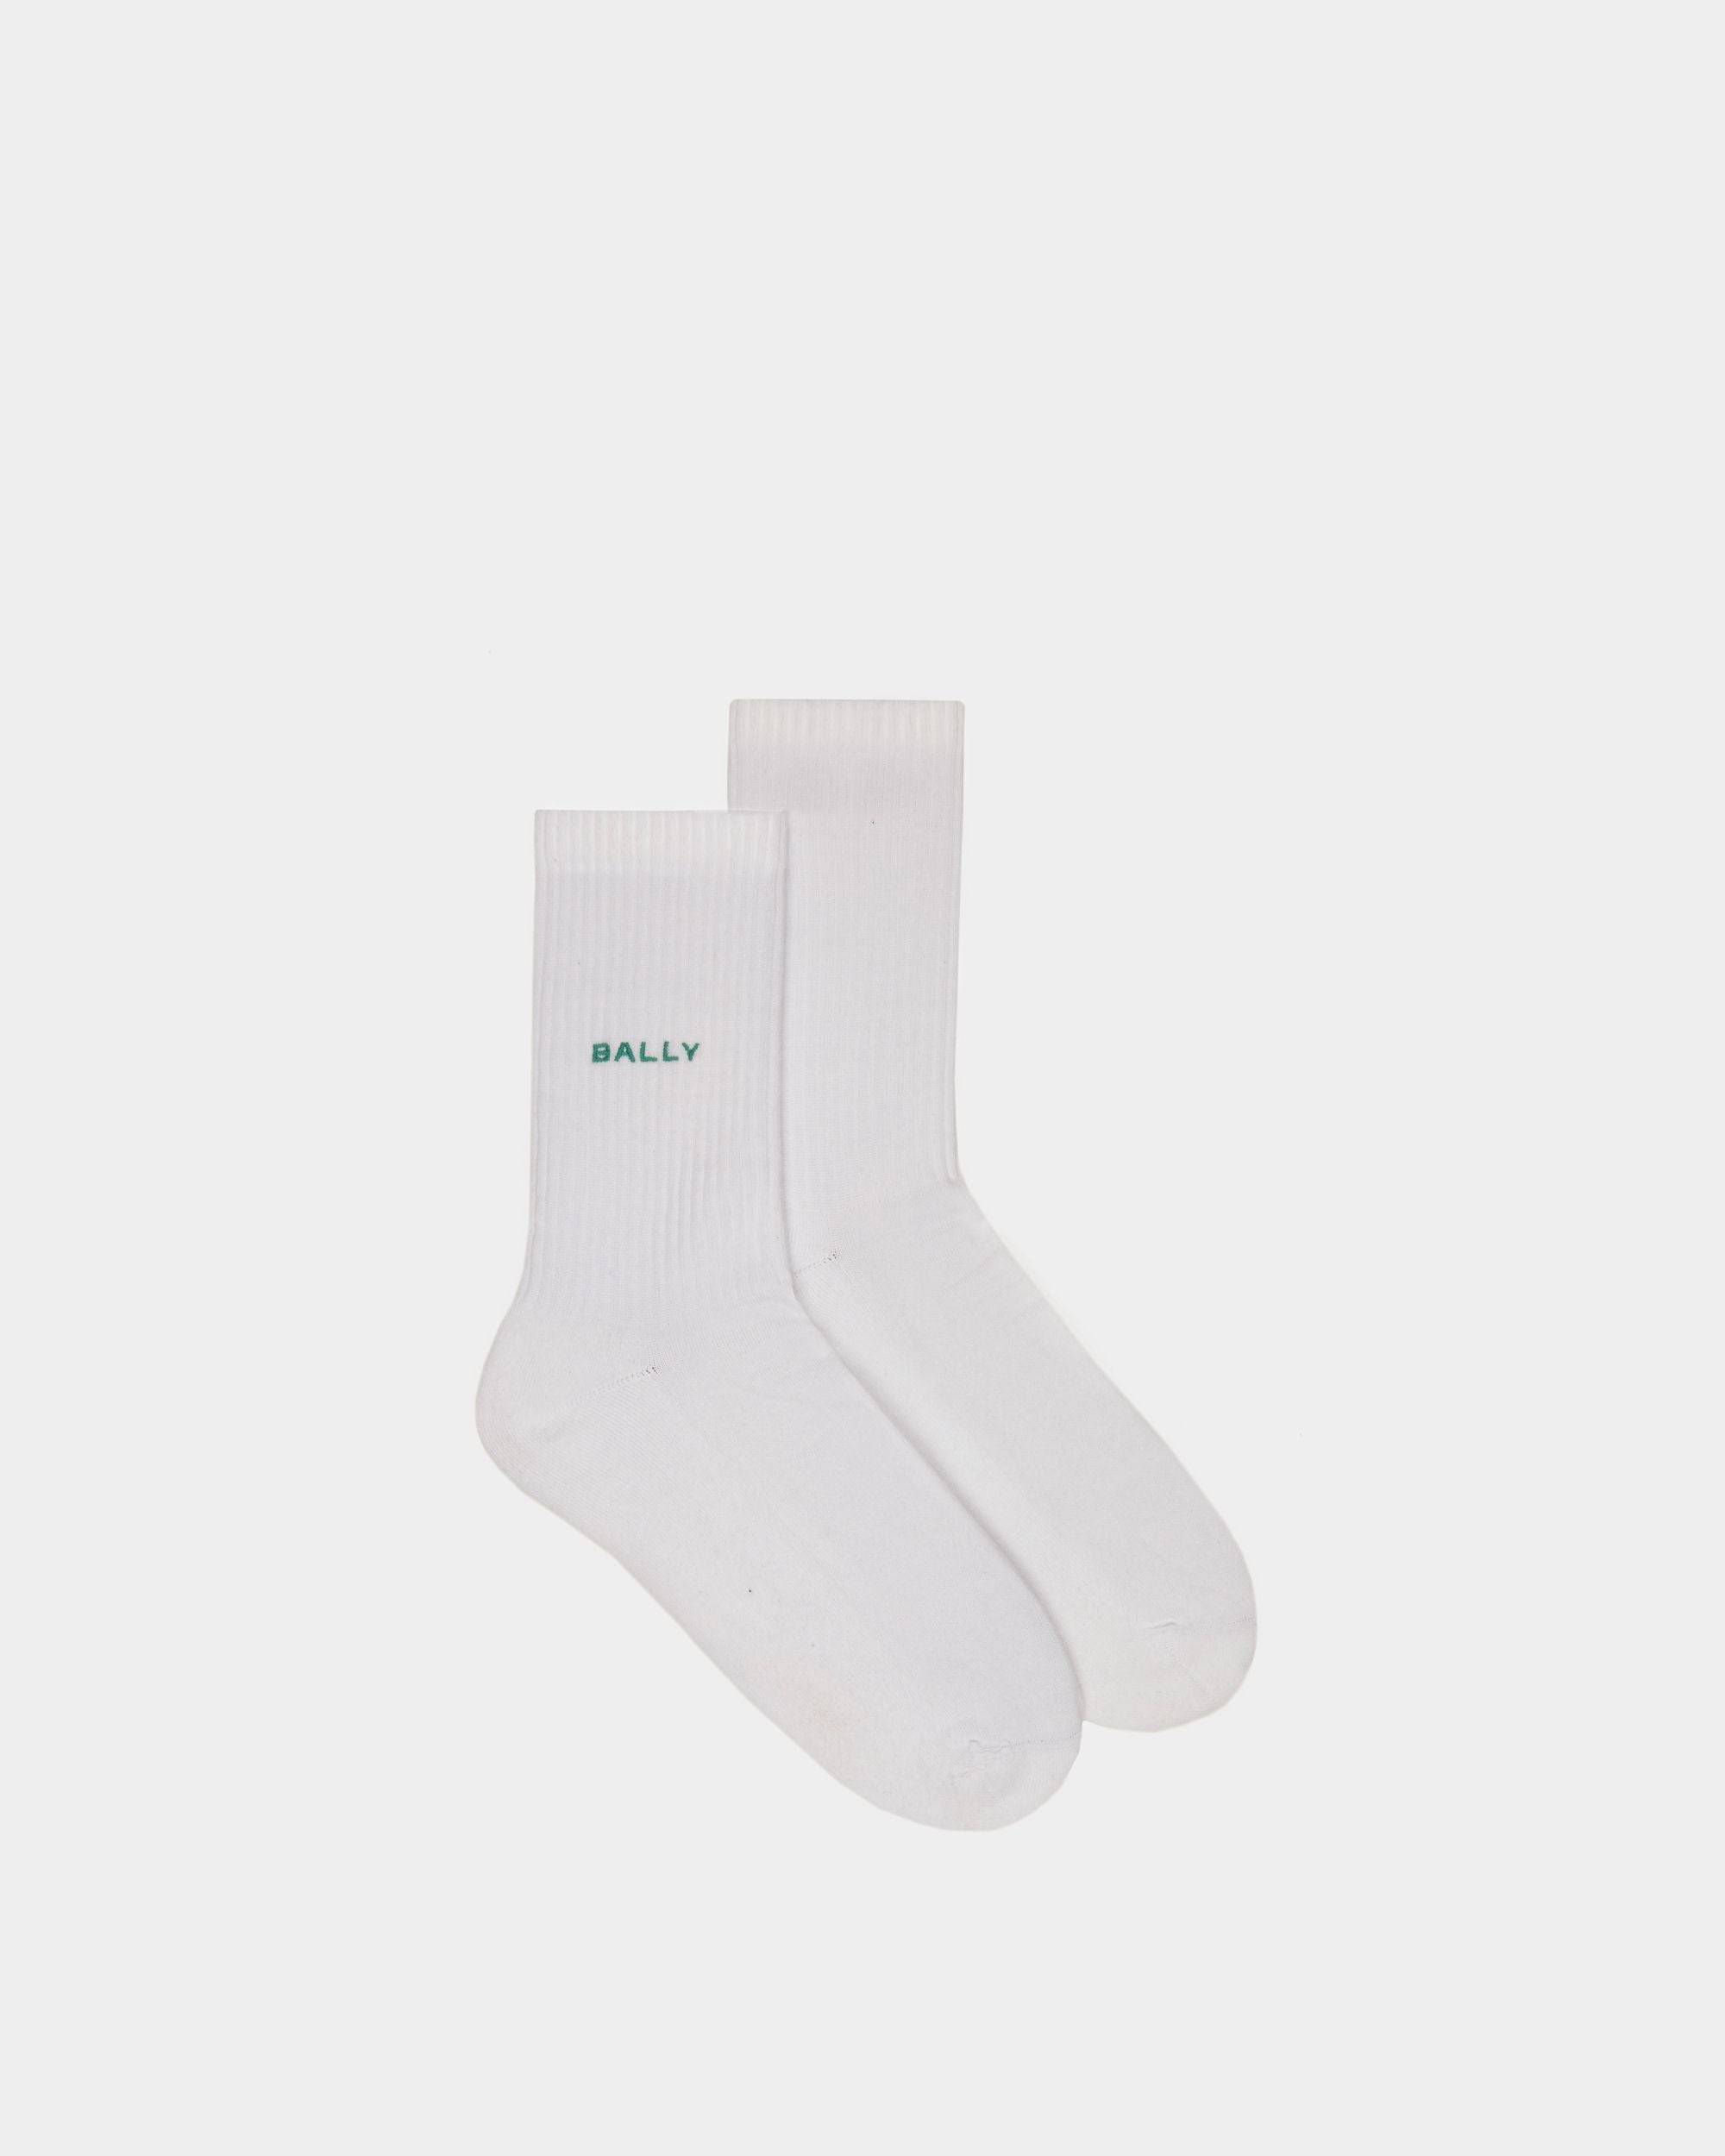 Men's Socks in White Cotton | Bally | Still Life Top